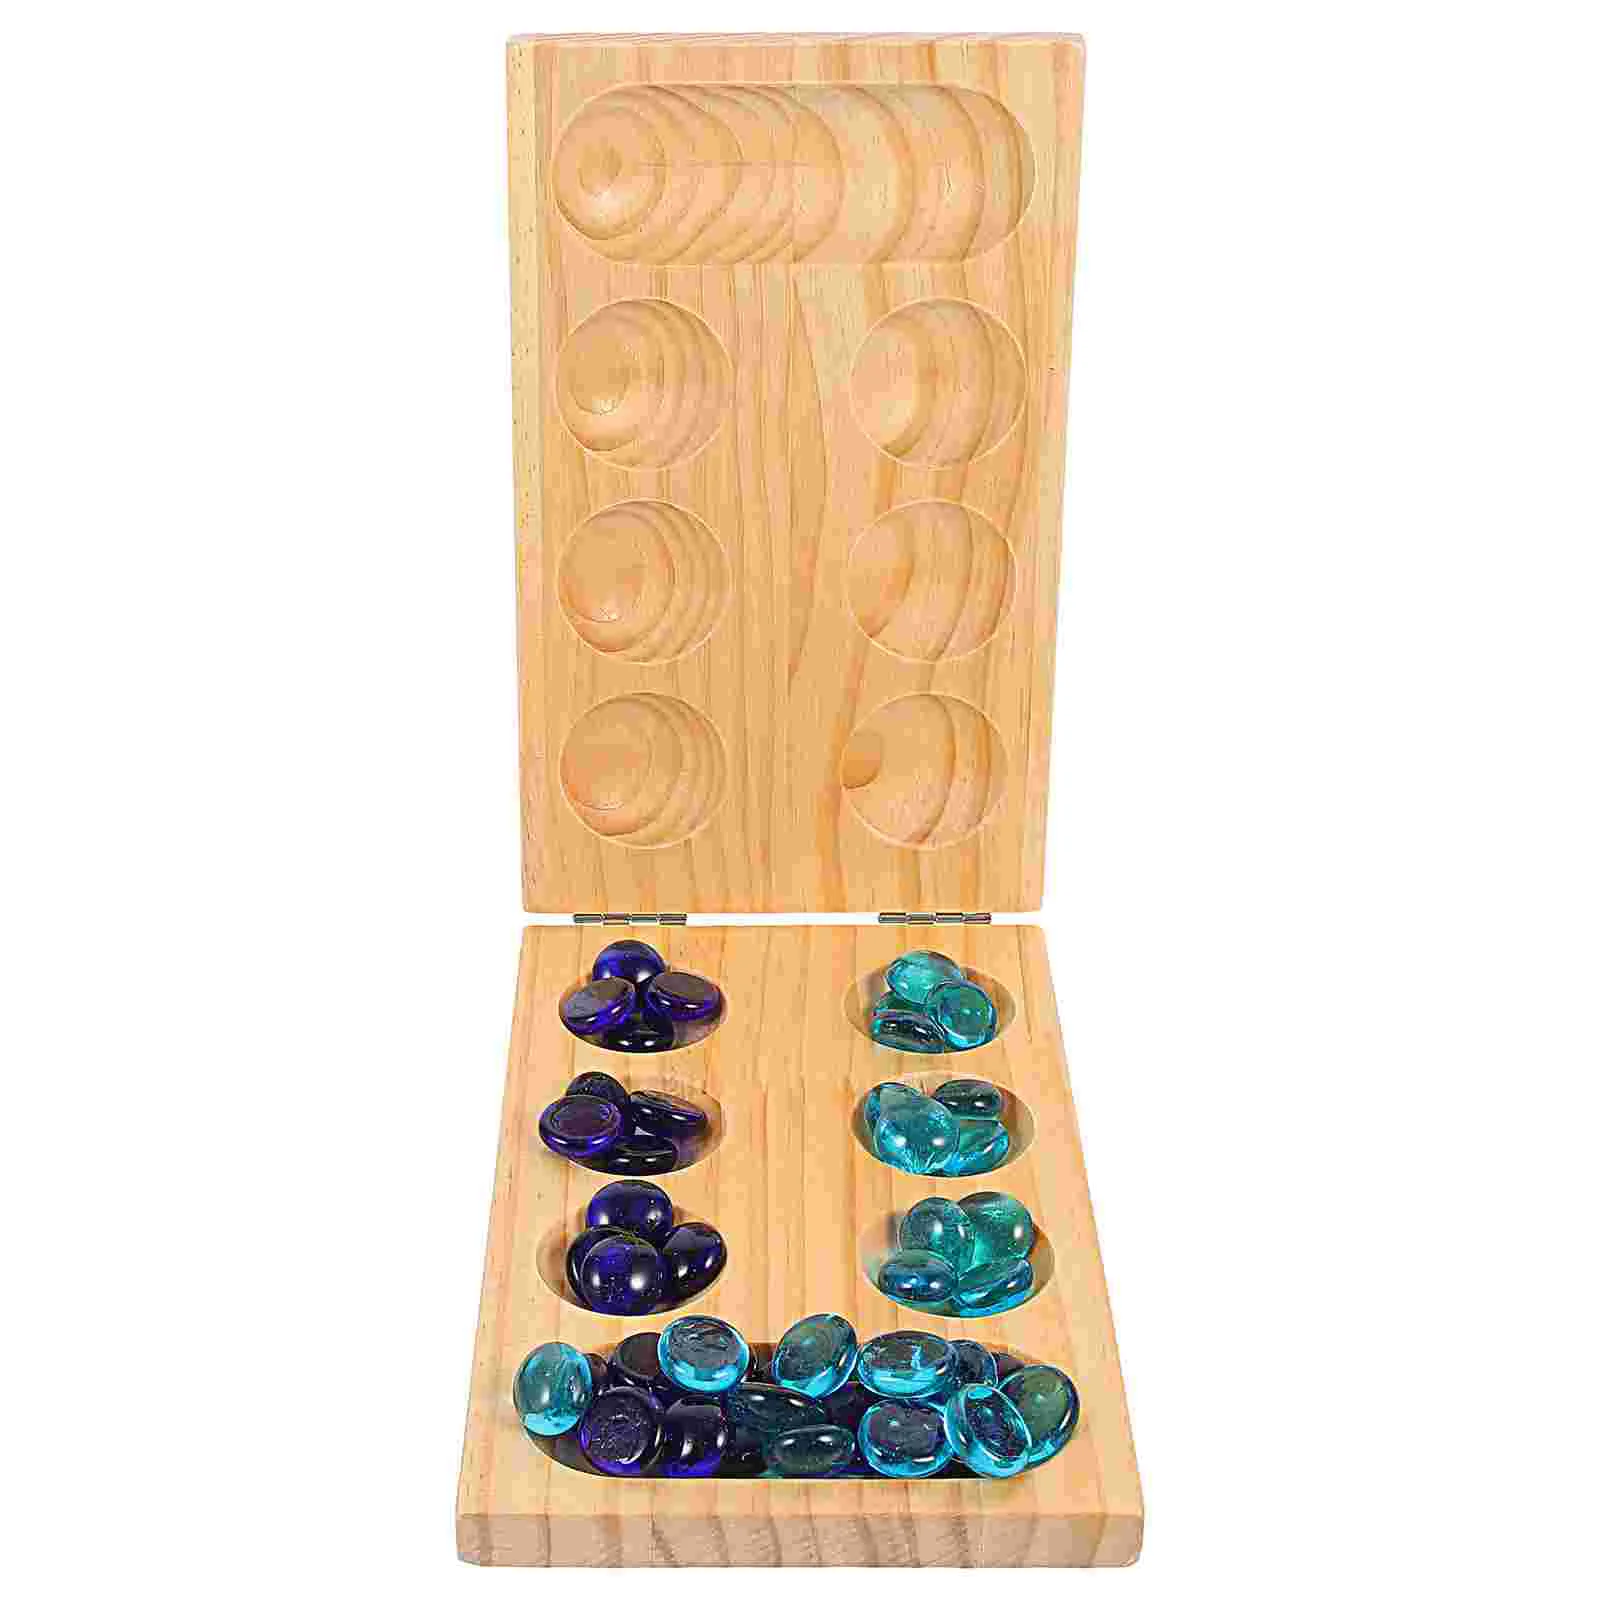 

Manкала Детские шахматы тренировочная логика детская игрушка деревянная игровая вещь складная доска деревянная